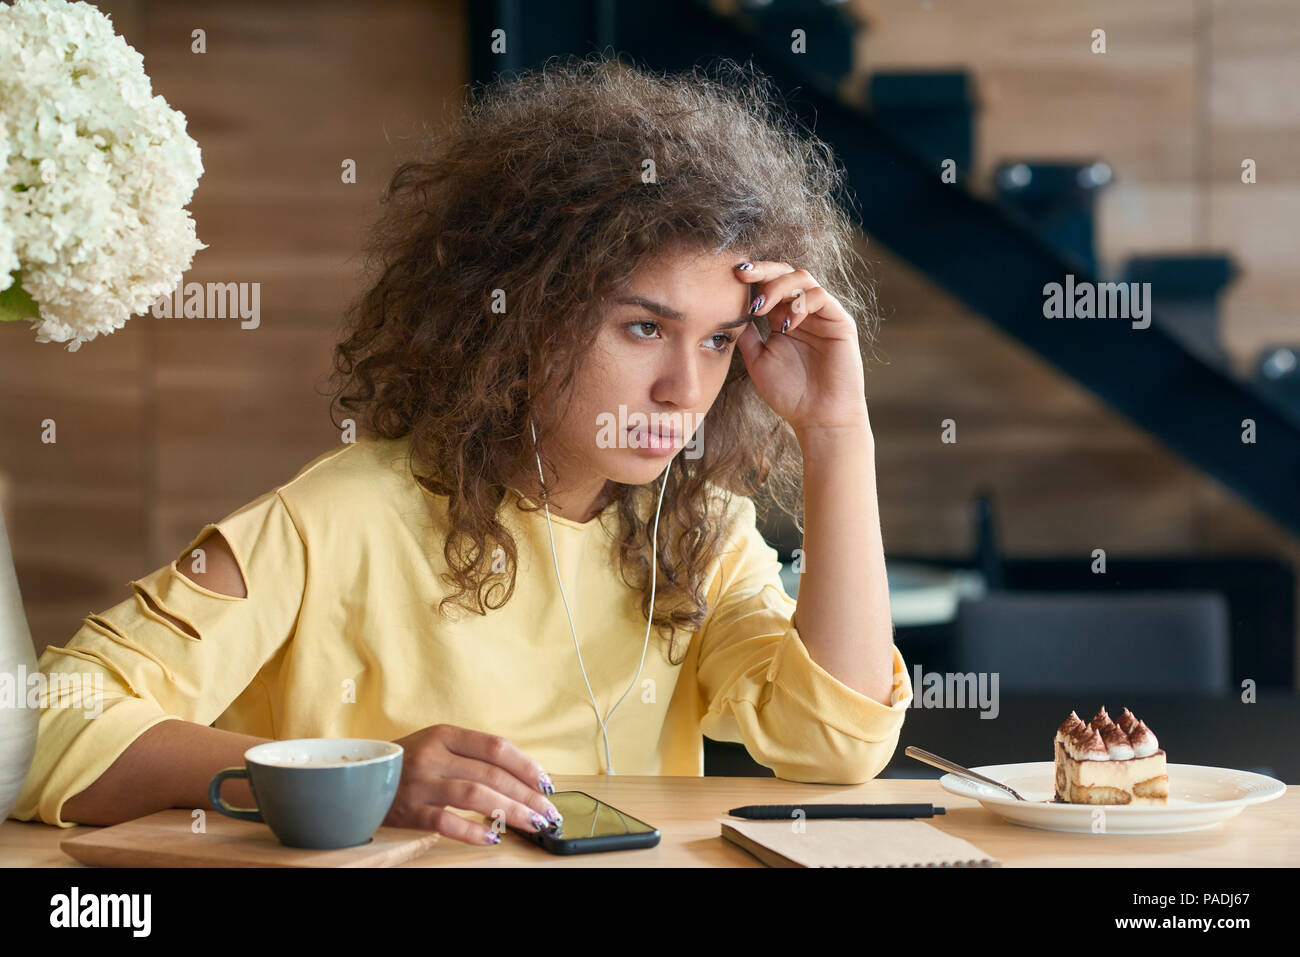 Deprimiert junge Frau mit lockigem Haar sitzt auf dem Tisch des Holz- Restaurant, erschöpft und wütend, Gefühl negative Emotionen. Tasse Kaffee und weiß lila Blumen, Treppen für den Hintergrund. Stockfoto